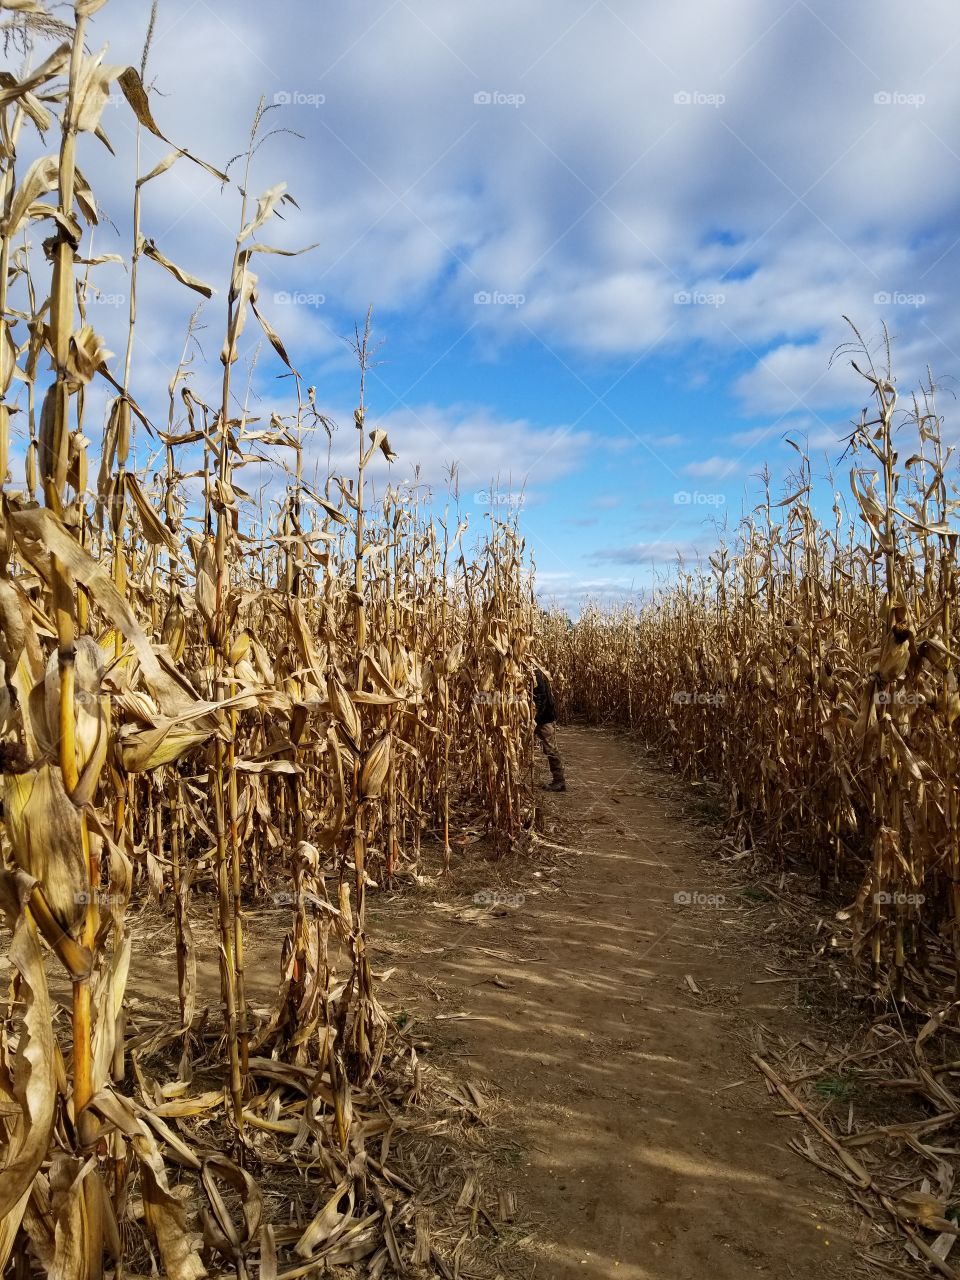 corn fields 2